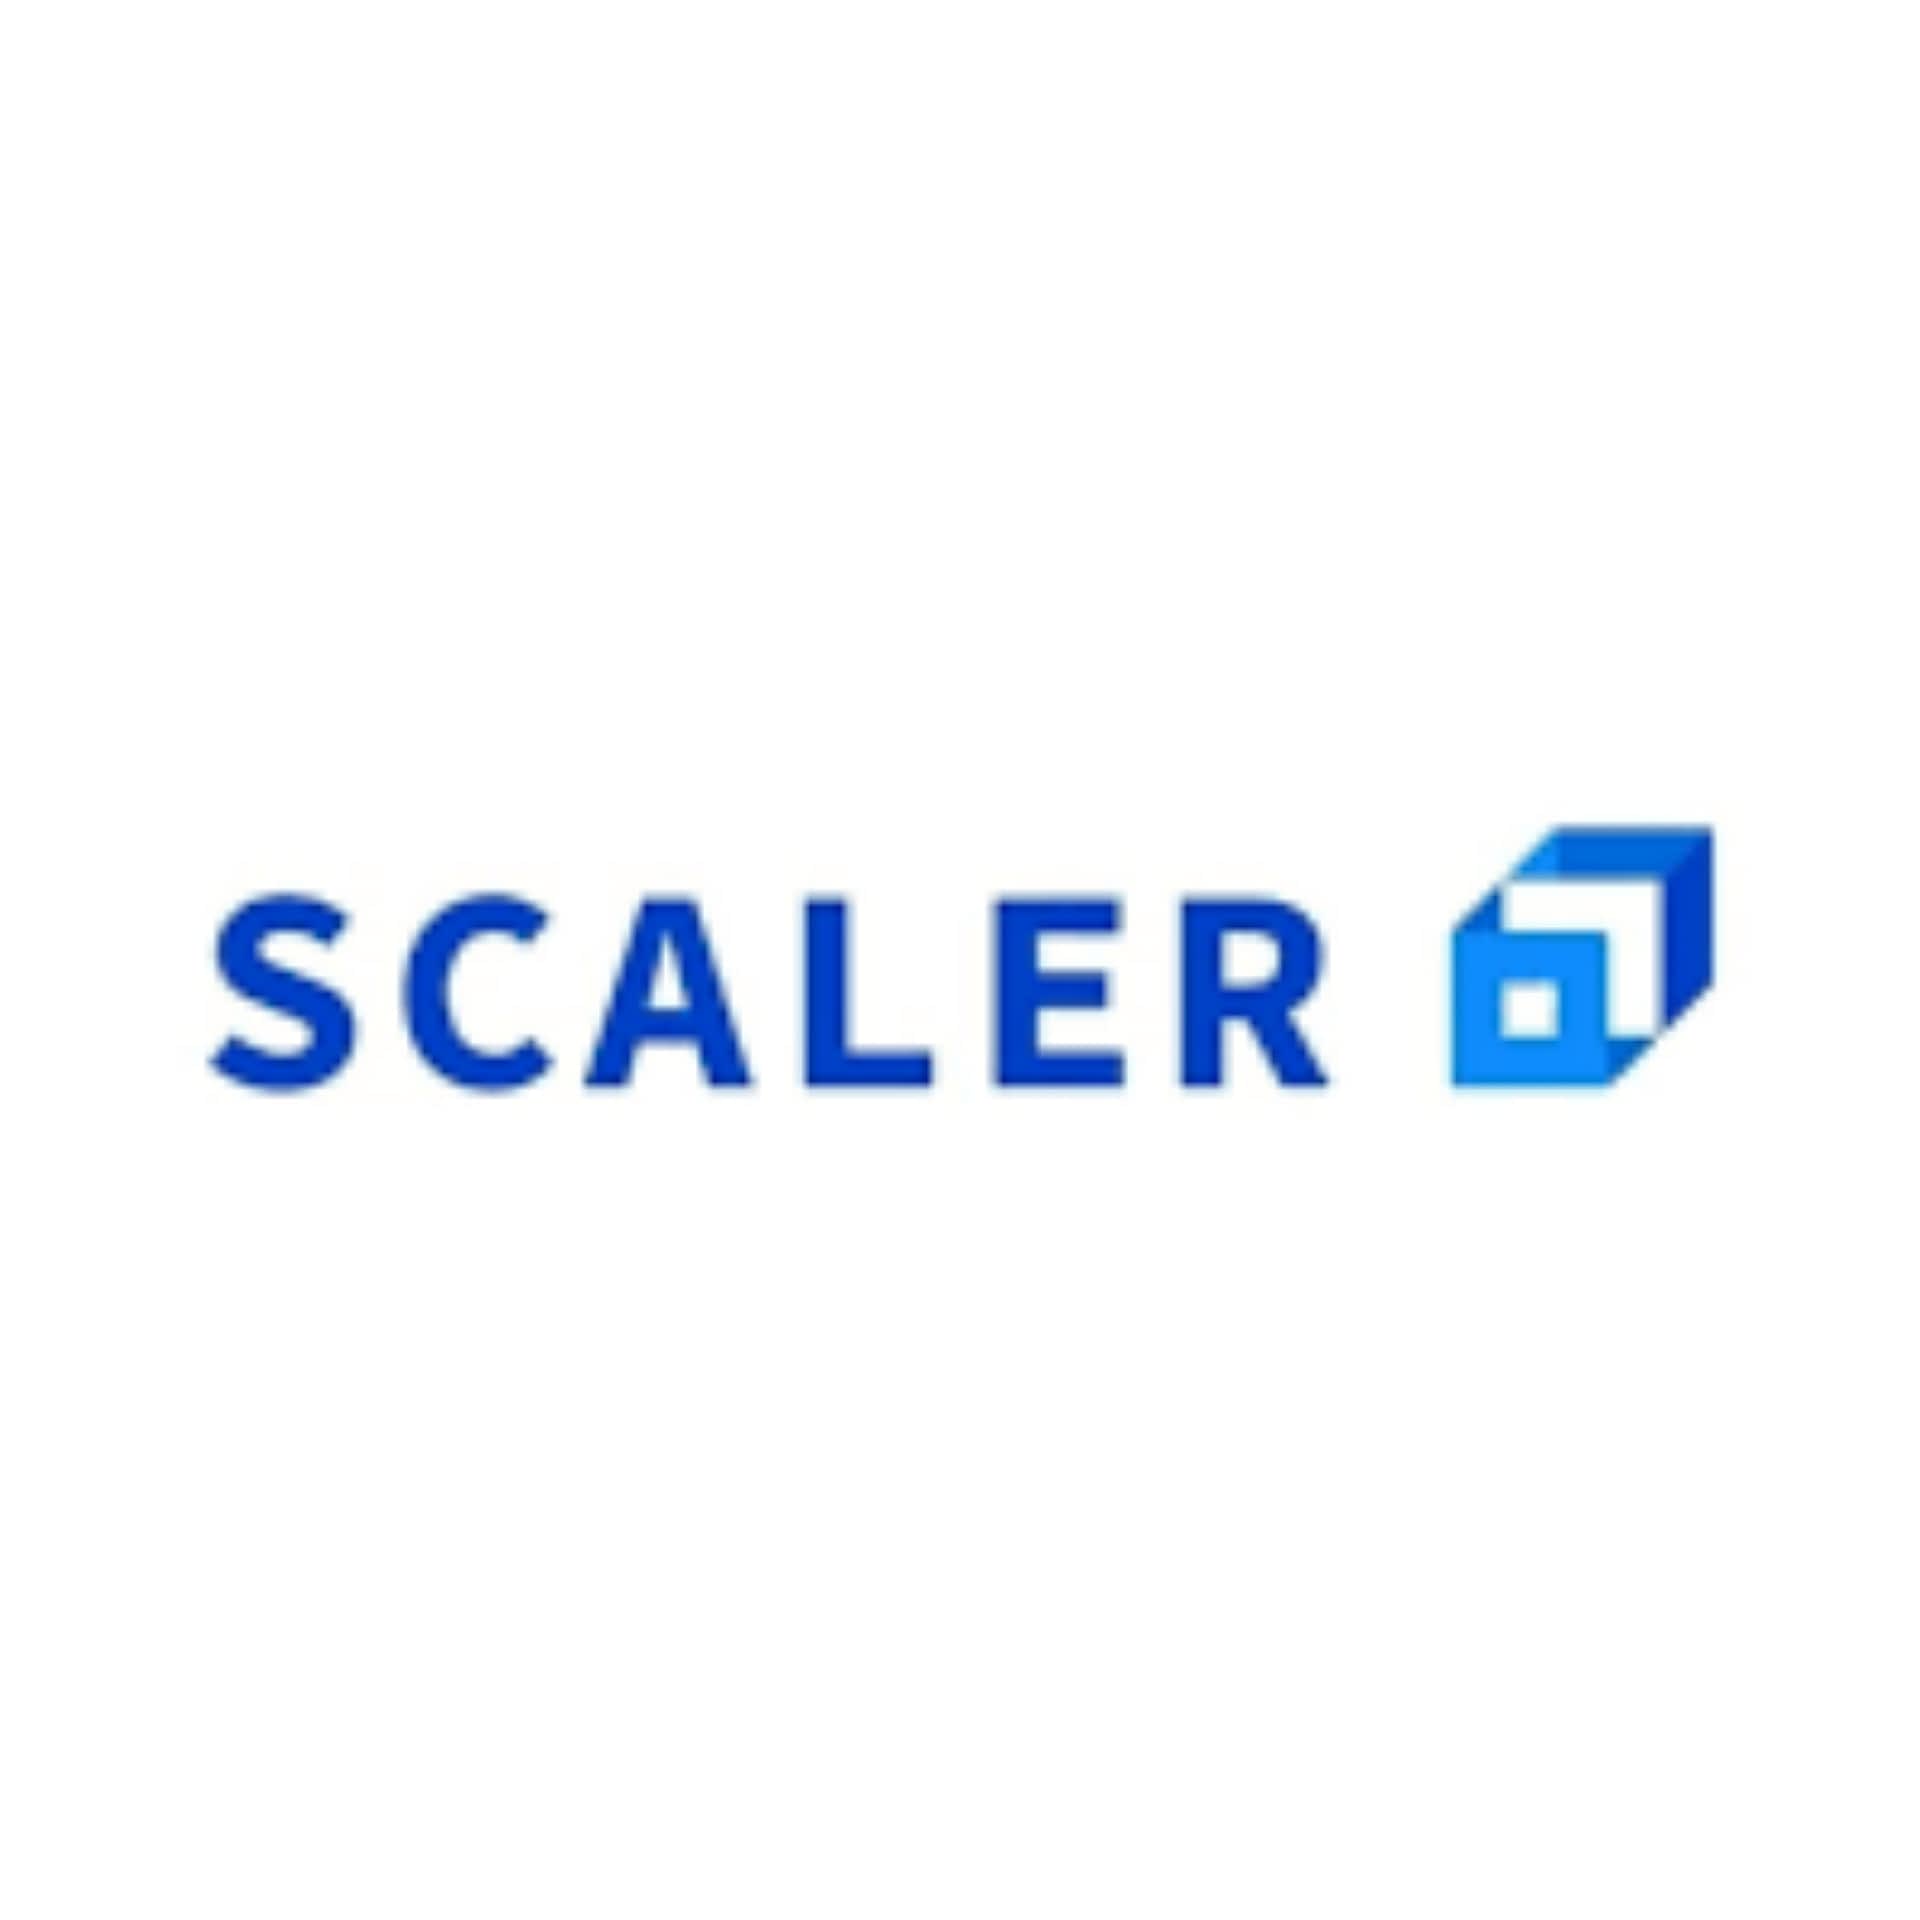 Scaler earmarks 100 CR marketing spend for 2022